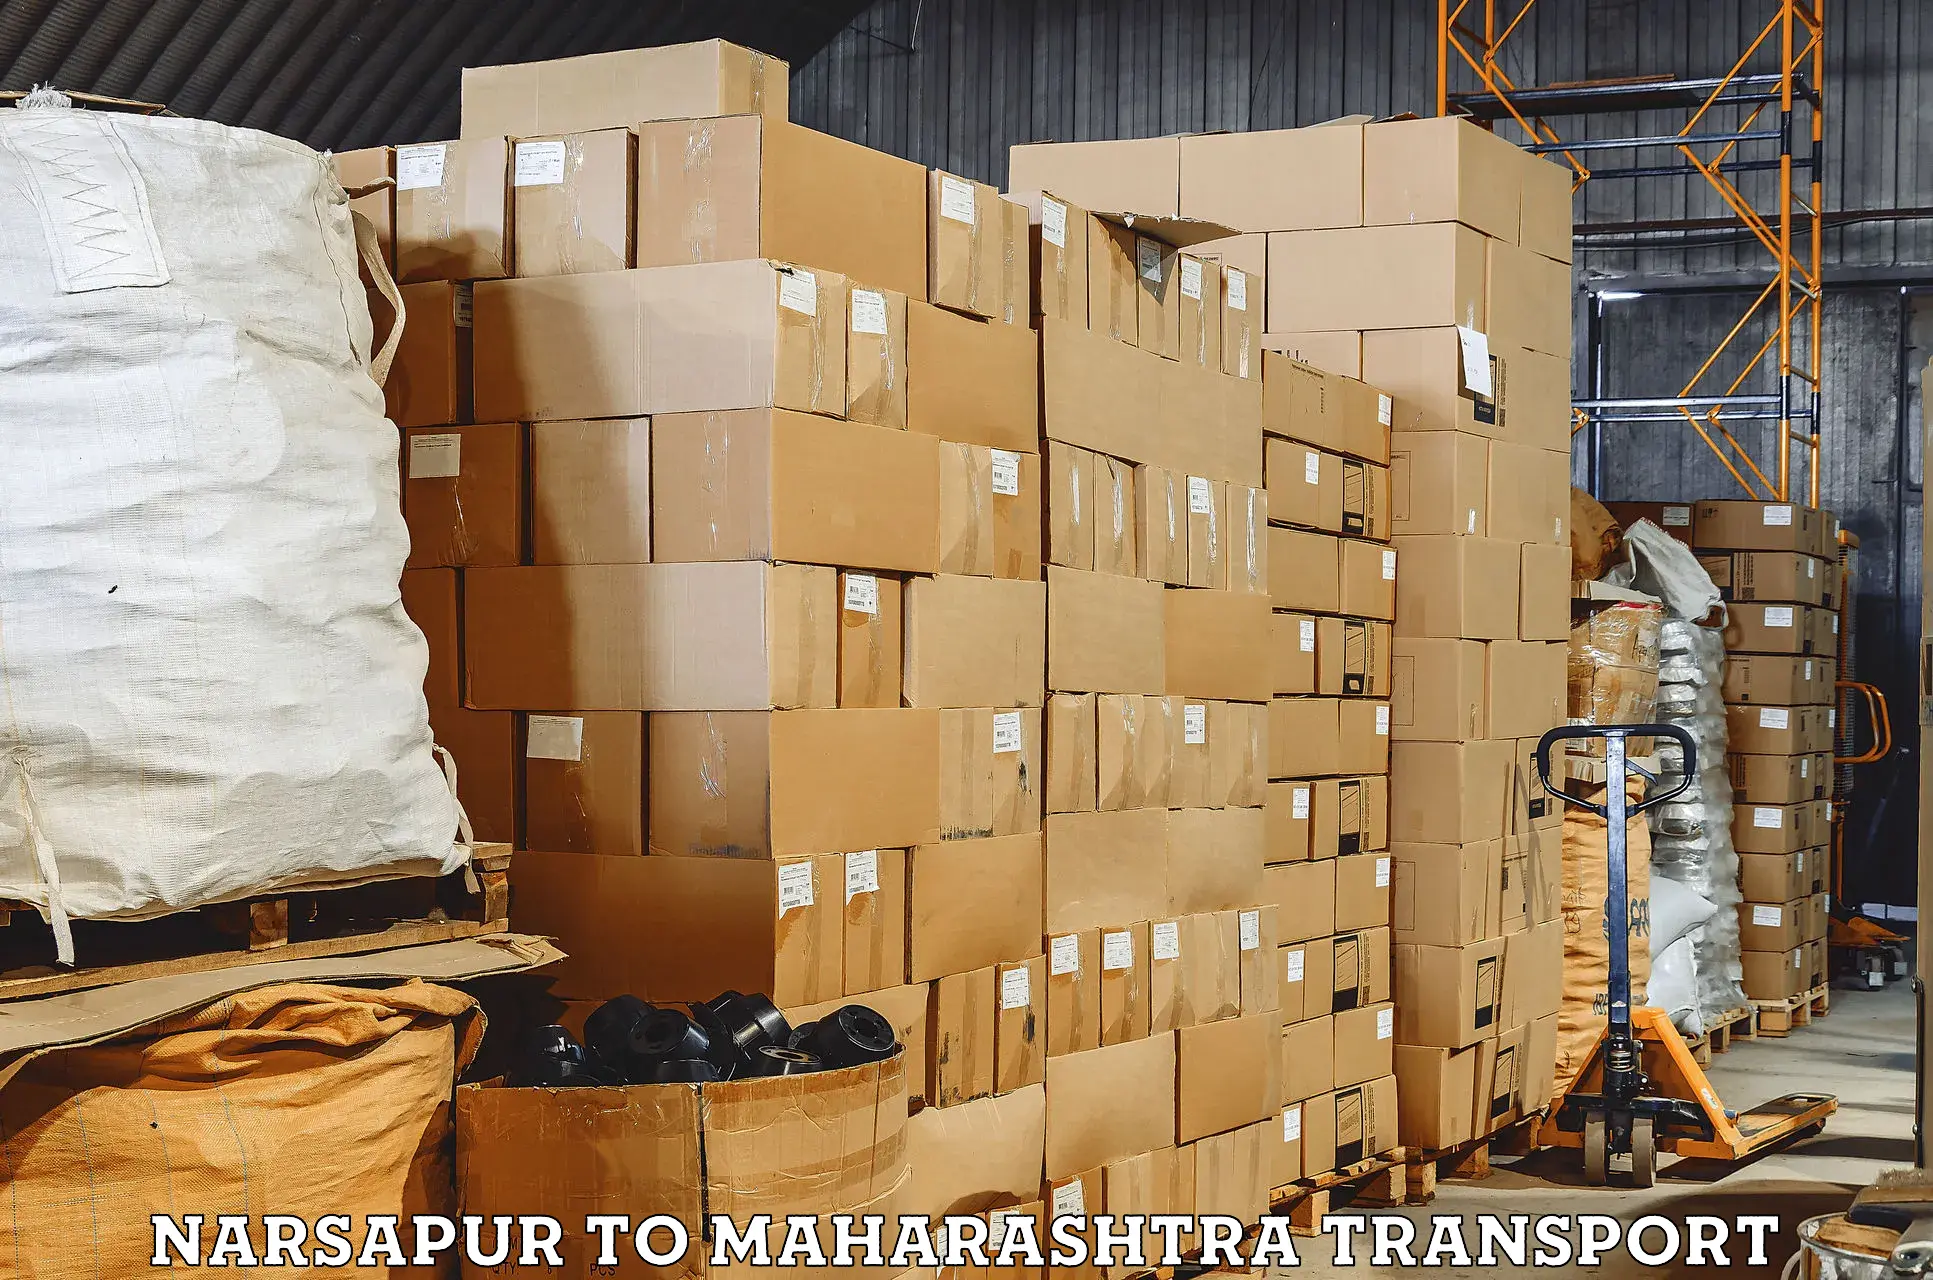 Nearby transport service Narsapur to Mahad